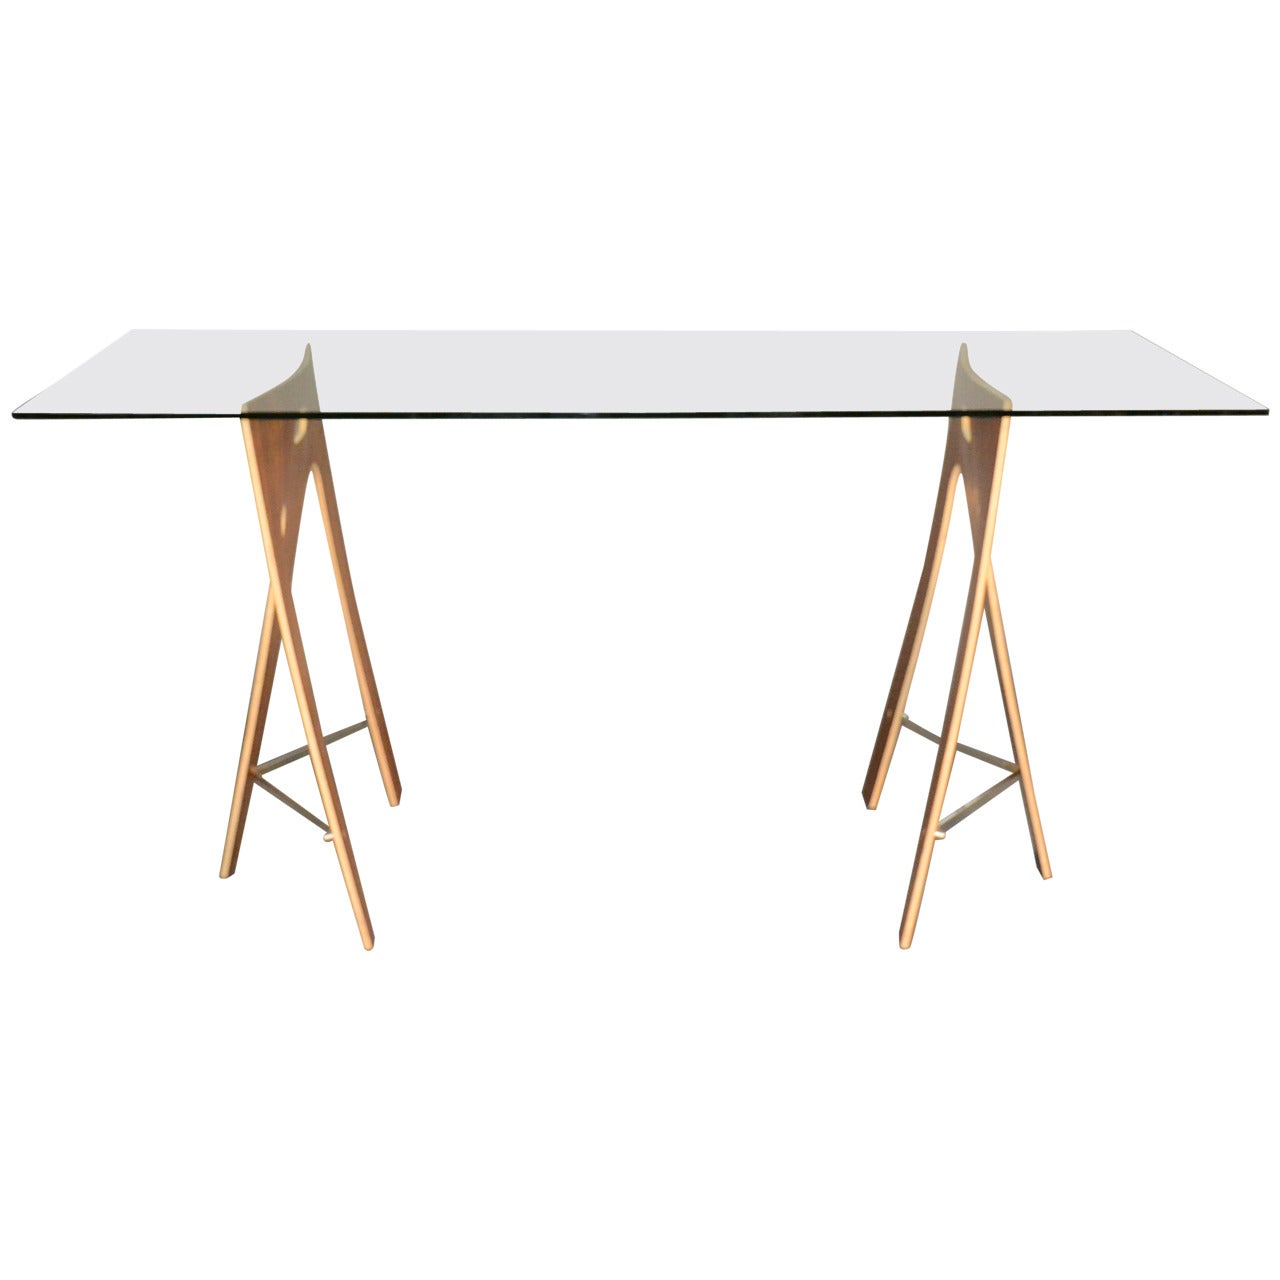 Sidestep Table or Desk by Franck Thorsten